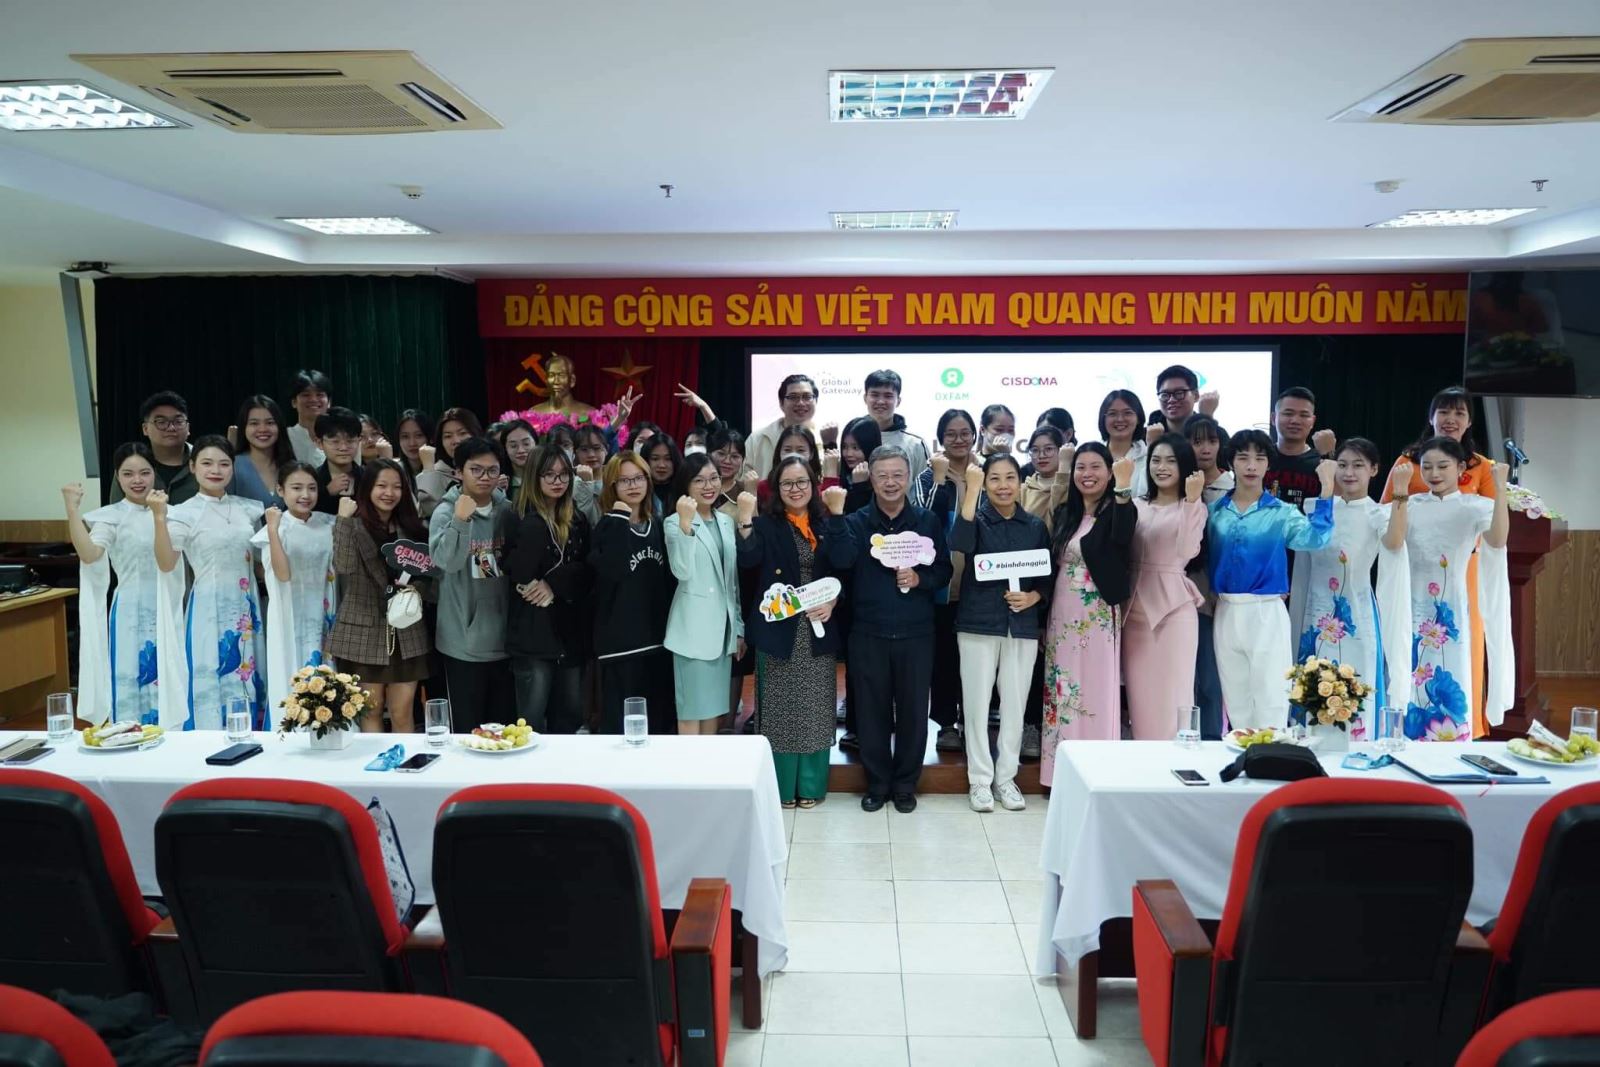 Lễ công bố kết quả sáng kiến thay đổi định kiến giới và thúc đẩy bình đẳng giới tại Việt Nam mùa 3